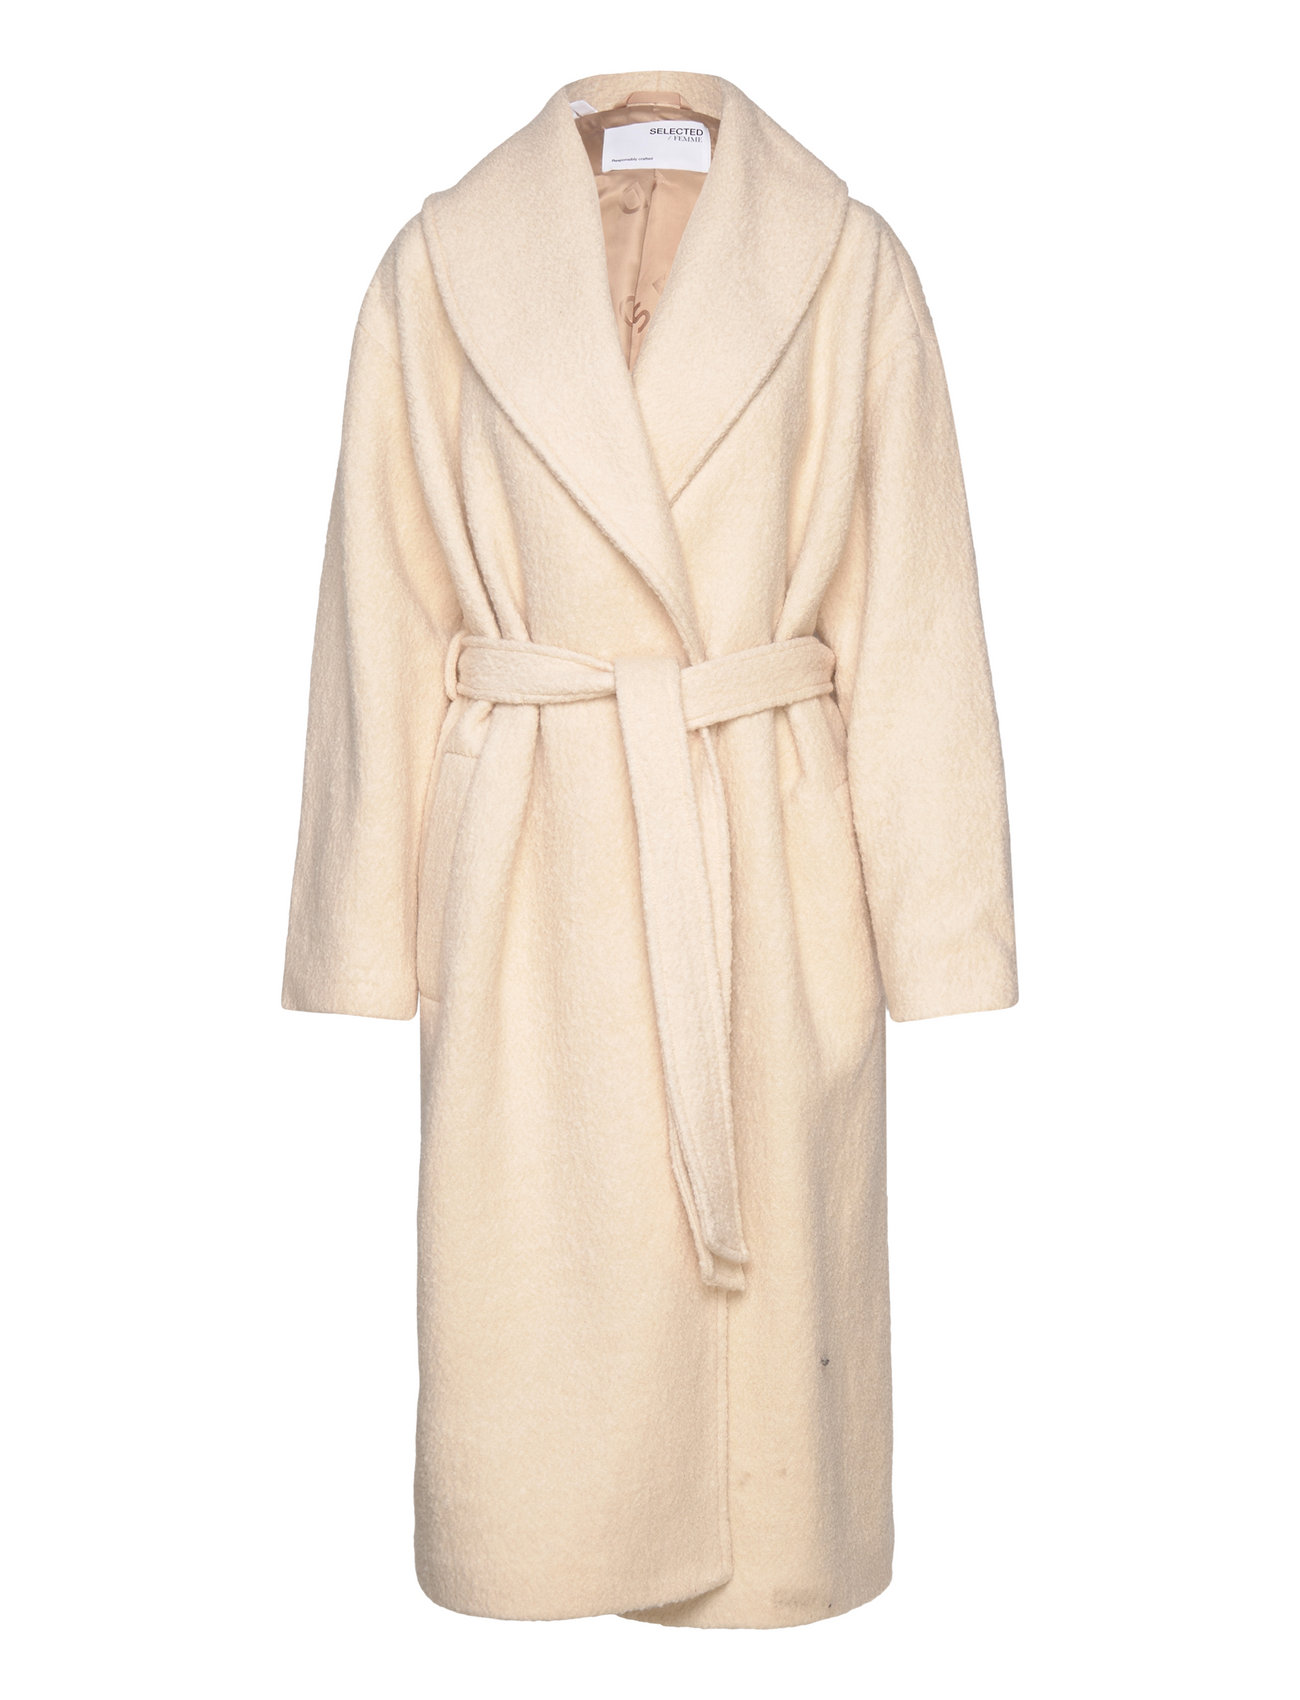 Selected Femme Slfmalena Wool Coat B - 1699 kr. Køb Vinterfrakker fra Femme online på Boozt.com. Hurtig levering & nem retur